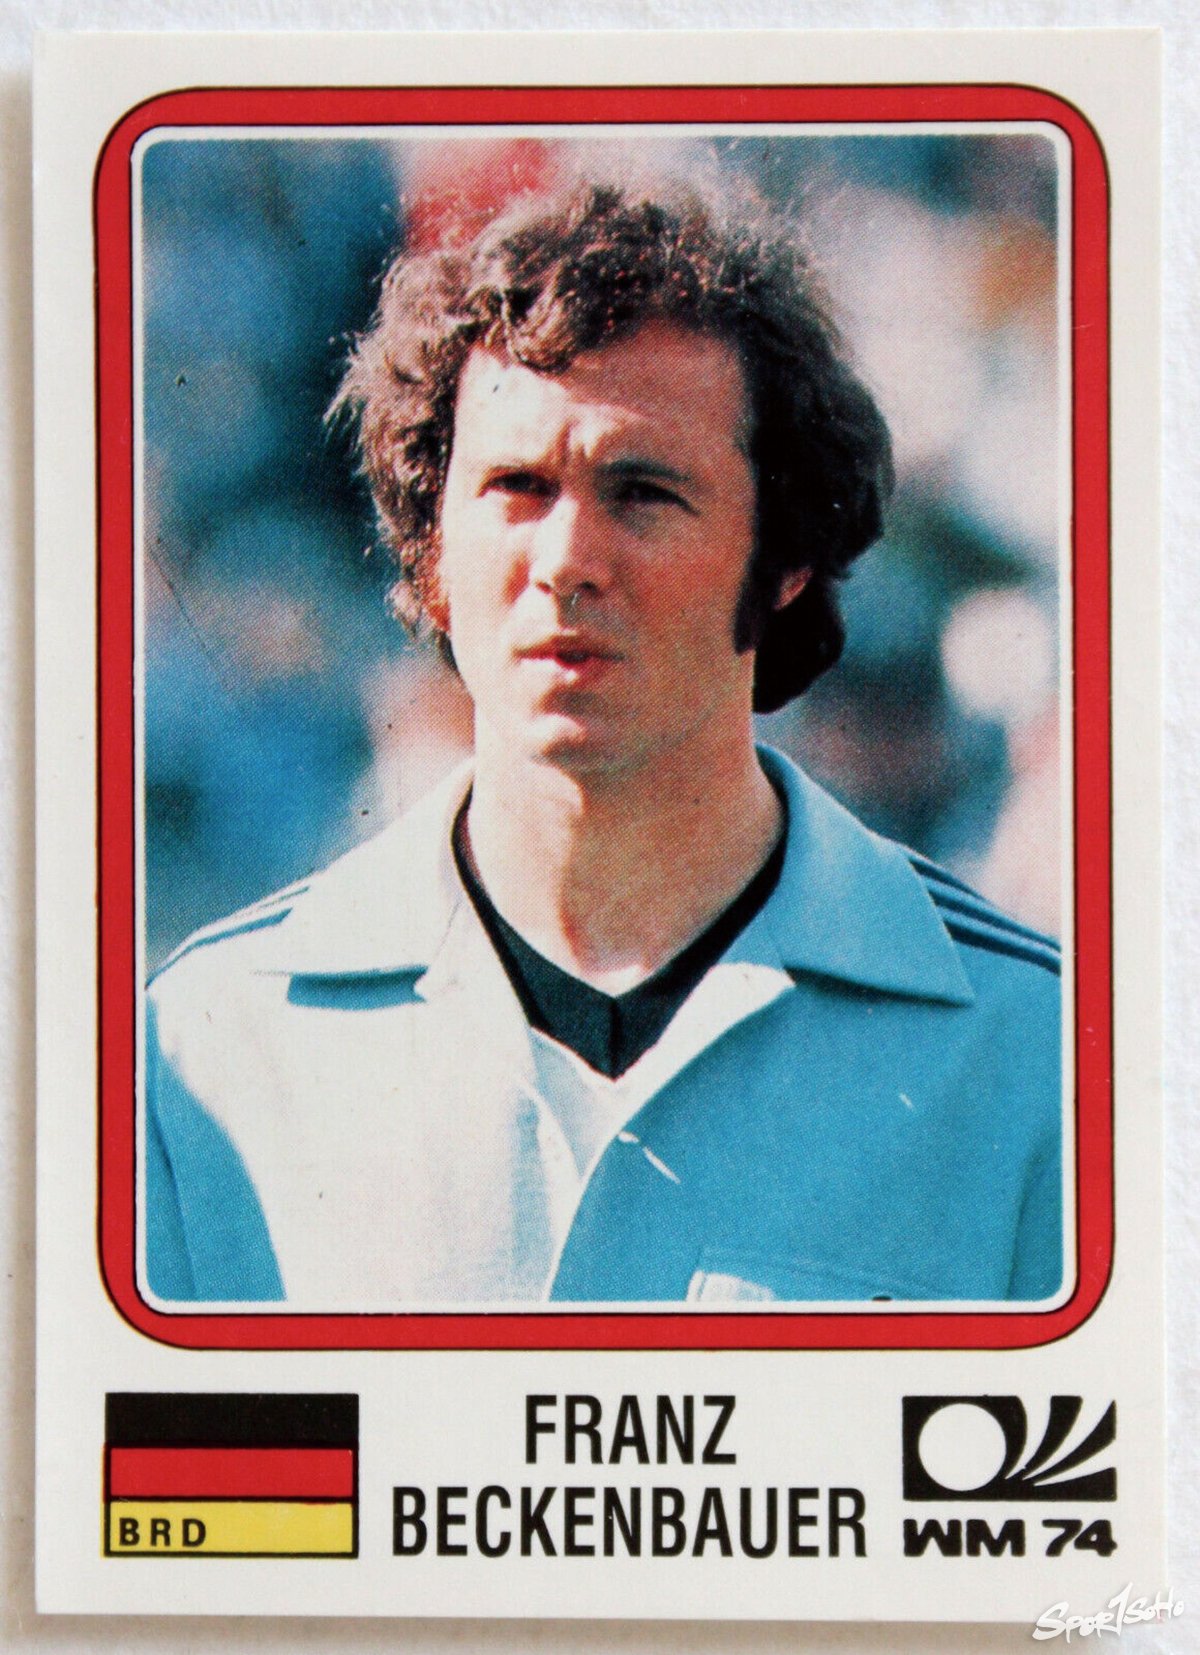 1974年世界盃以隊長身份帶領西德奪冠